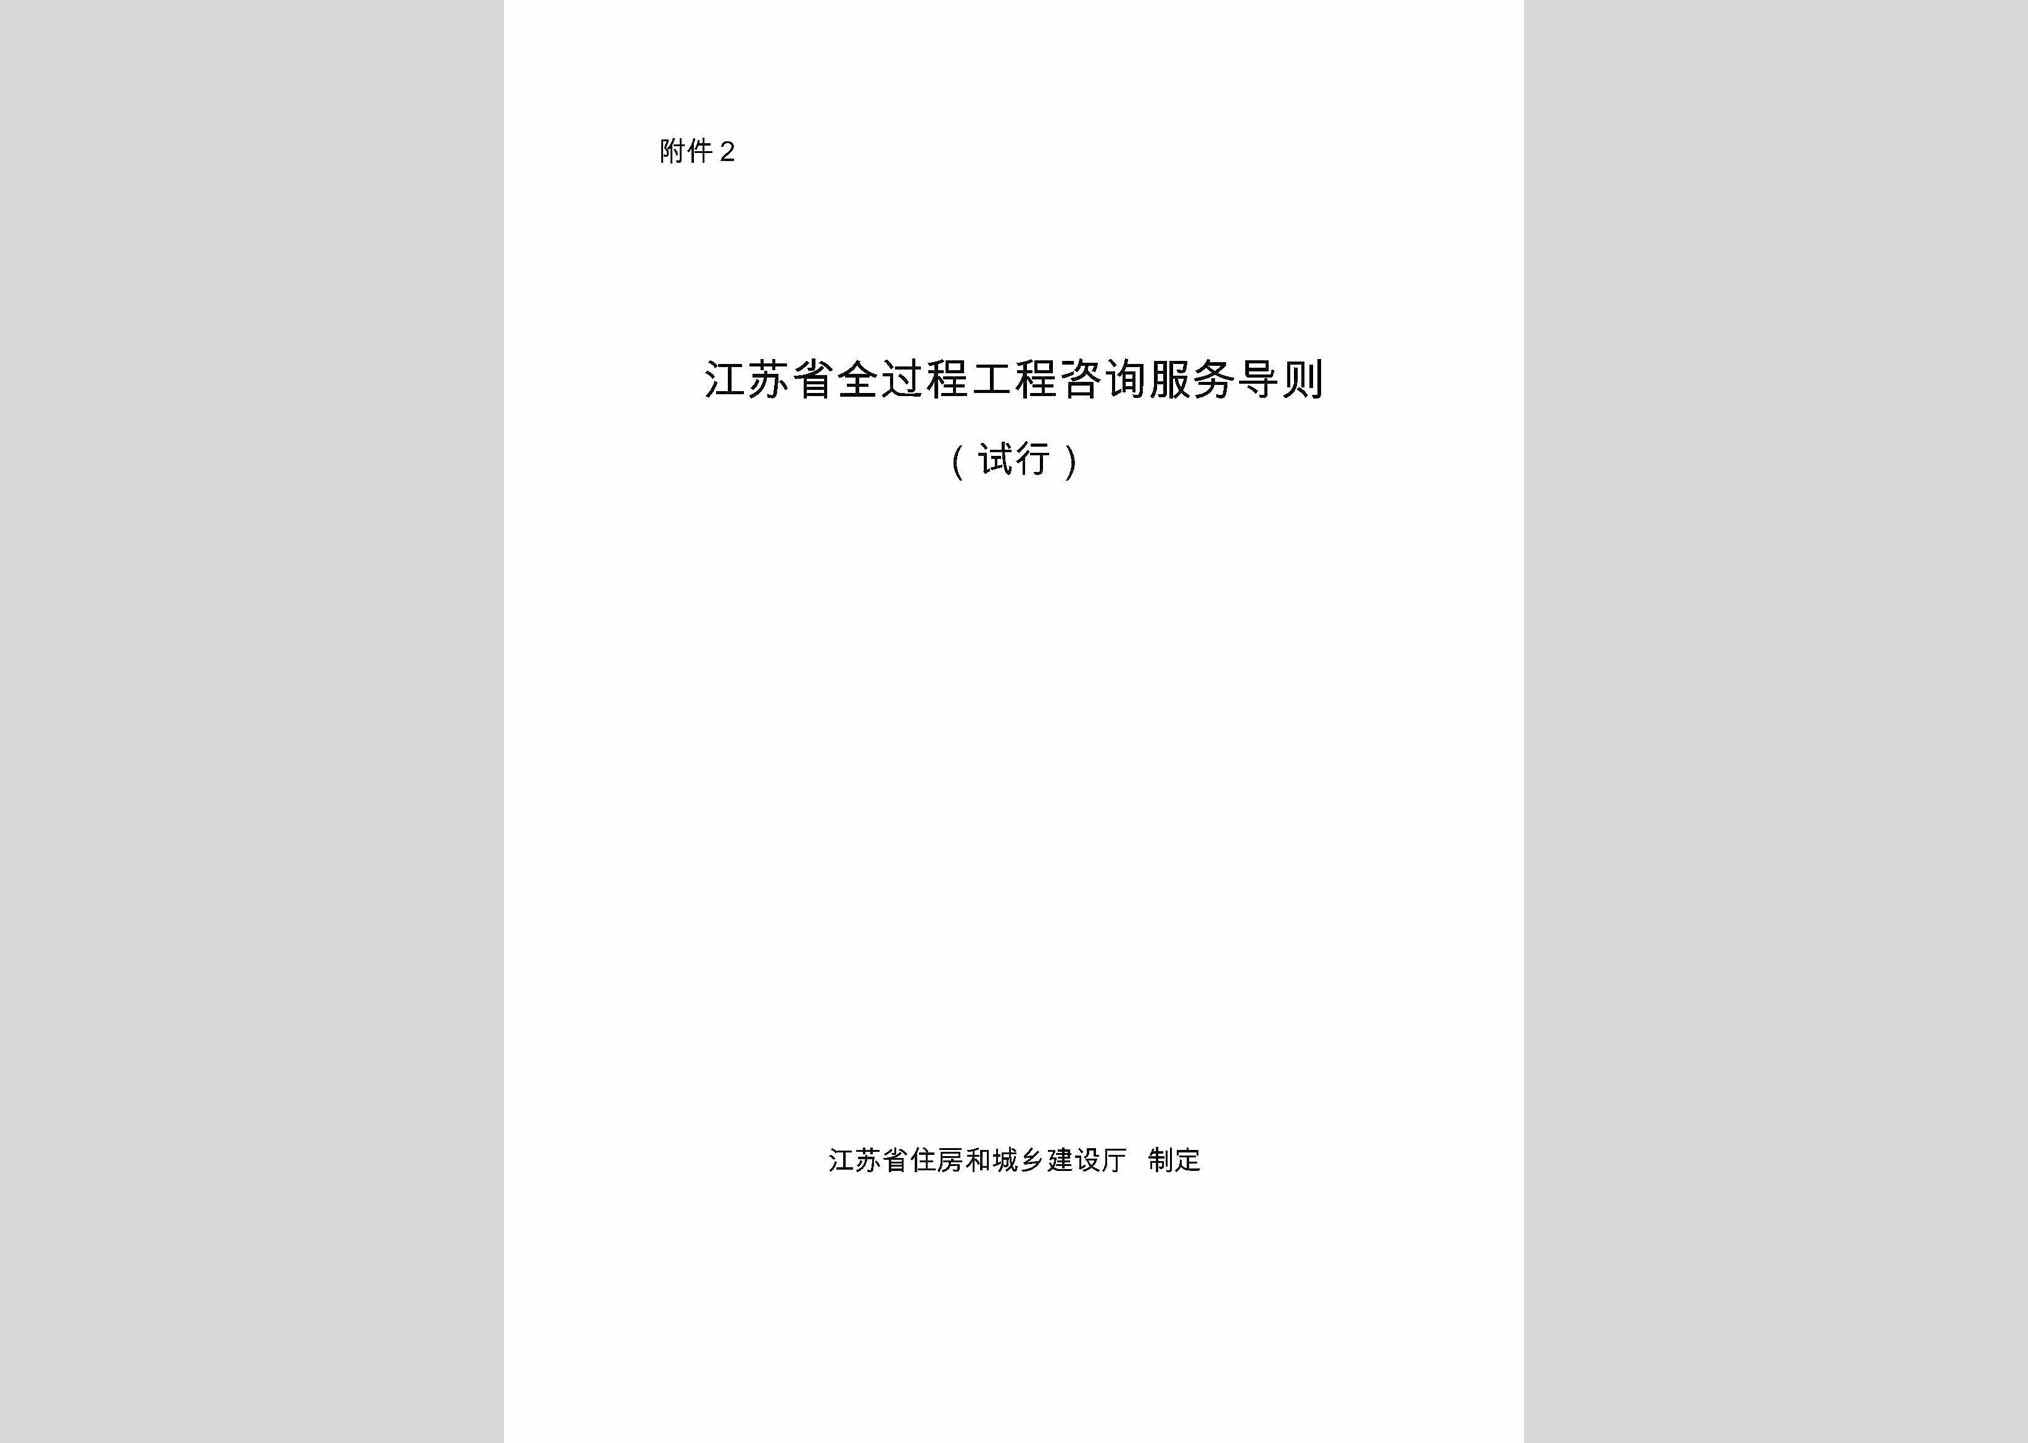 JSSQGCZX：江苏省全过程工程咨询服务导则(试行)